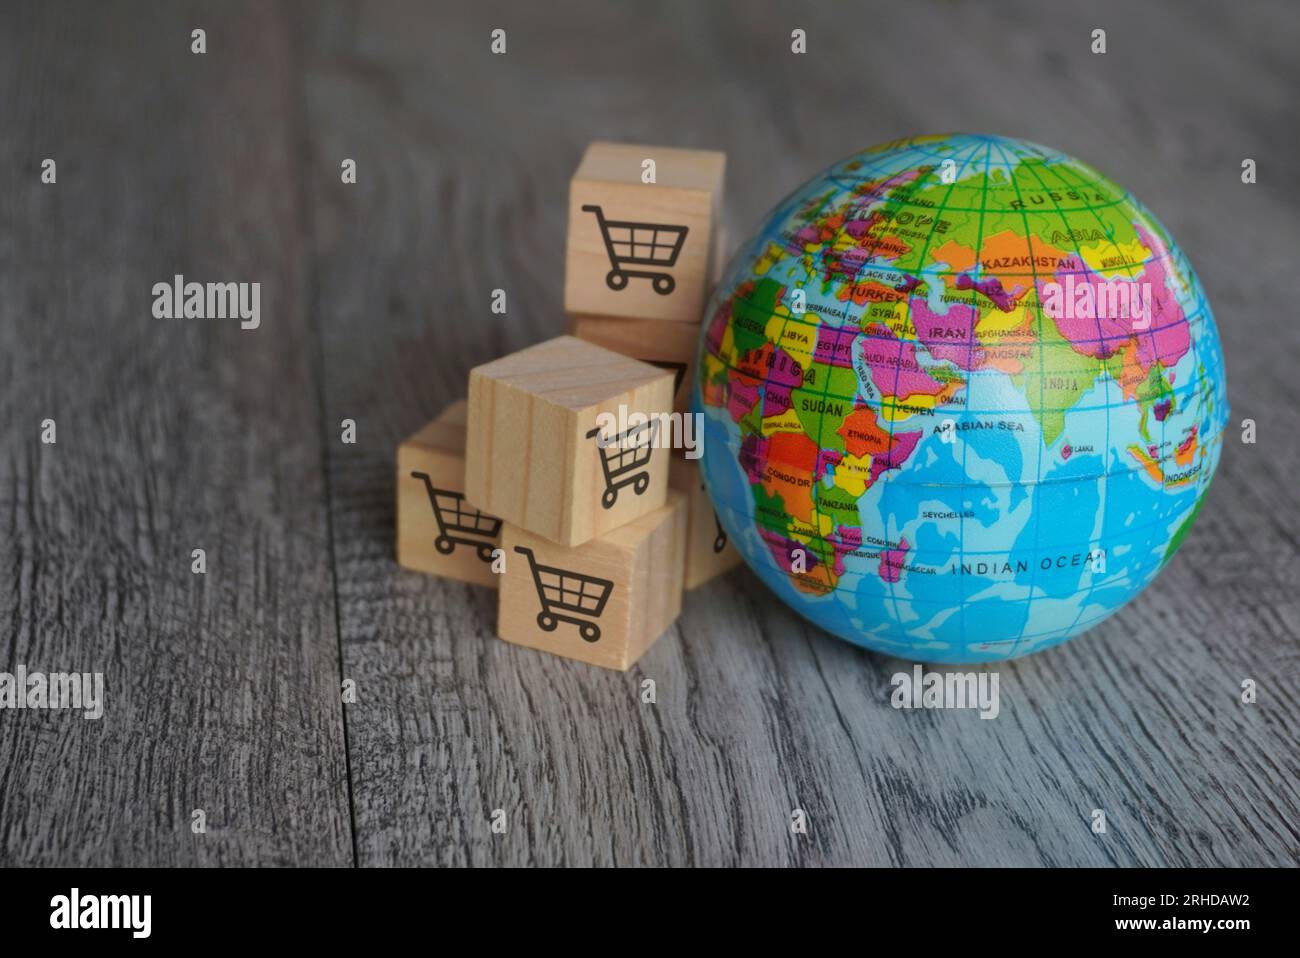 Immagine ravvicinata del globo e dei cubi di legno con l'icona del carrello della spesa. Retail globale, concetto di business internazionale. Foto Stock